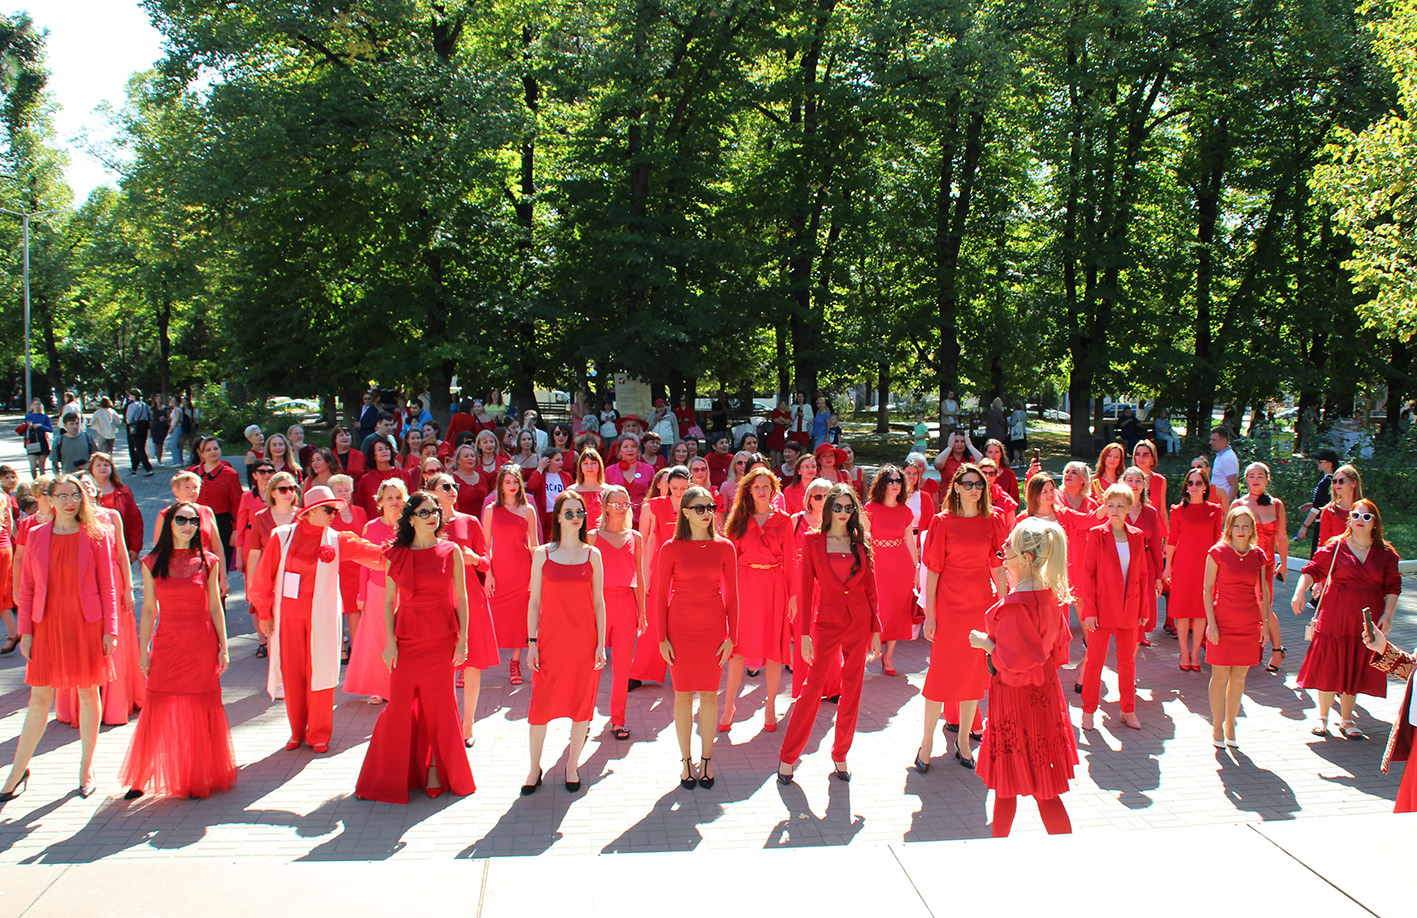 В Ростове-на-Дону прошёл международный фестиваль PRO Женщин